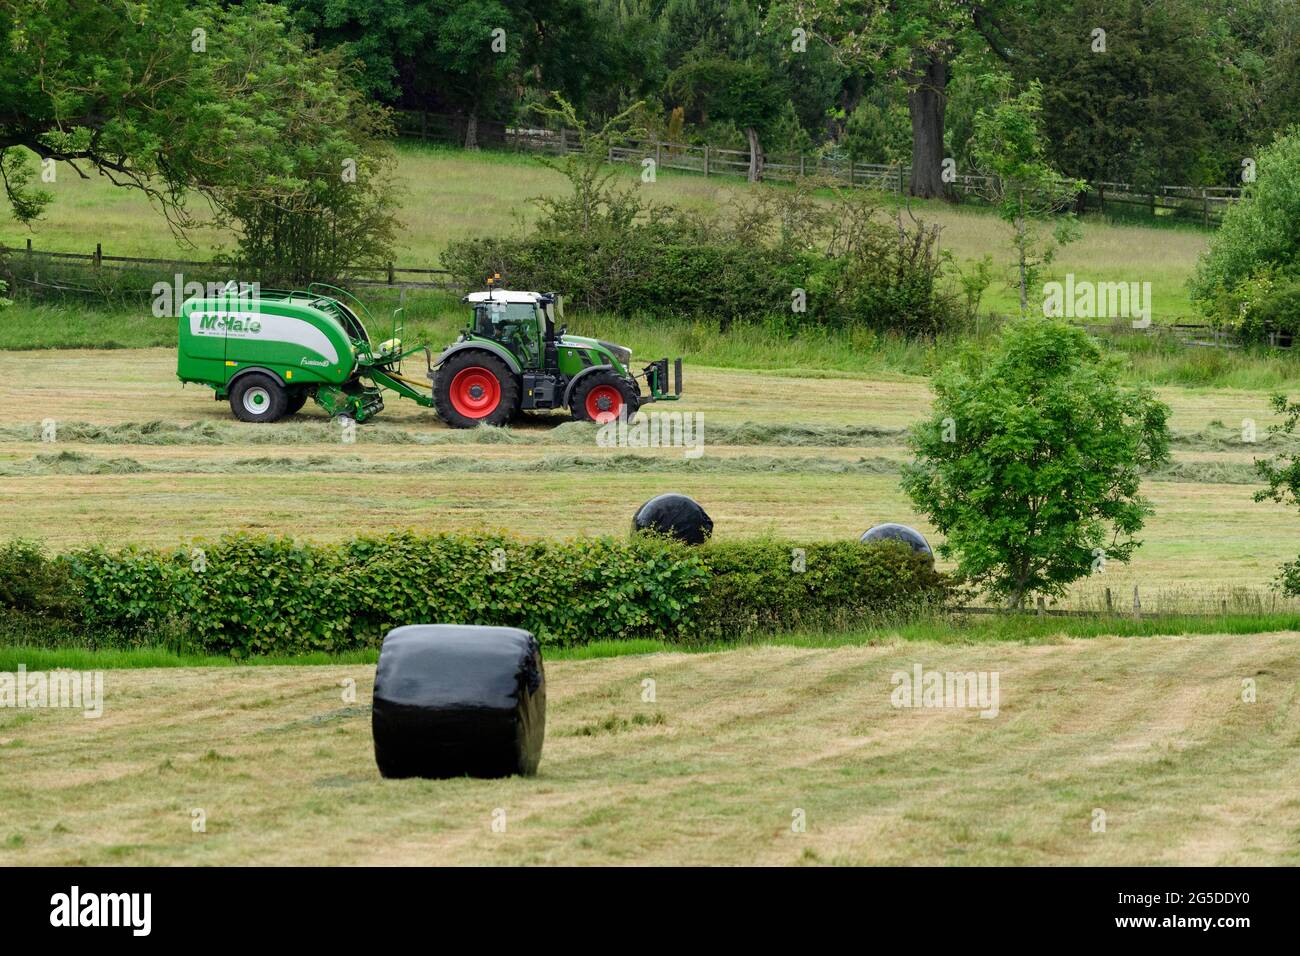 Fabricación de heno o ensilaje (agricultor en tractor agrícola en el trabajo en campo rural, empacadora de tiro, recolección de hierba seca y pacas redondas envueltas - Yorkshire England, Reino Unido. Foto de stock